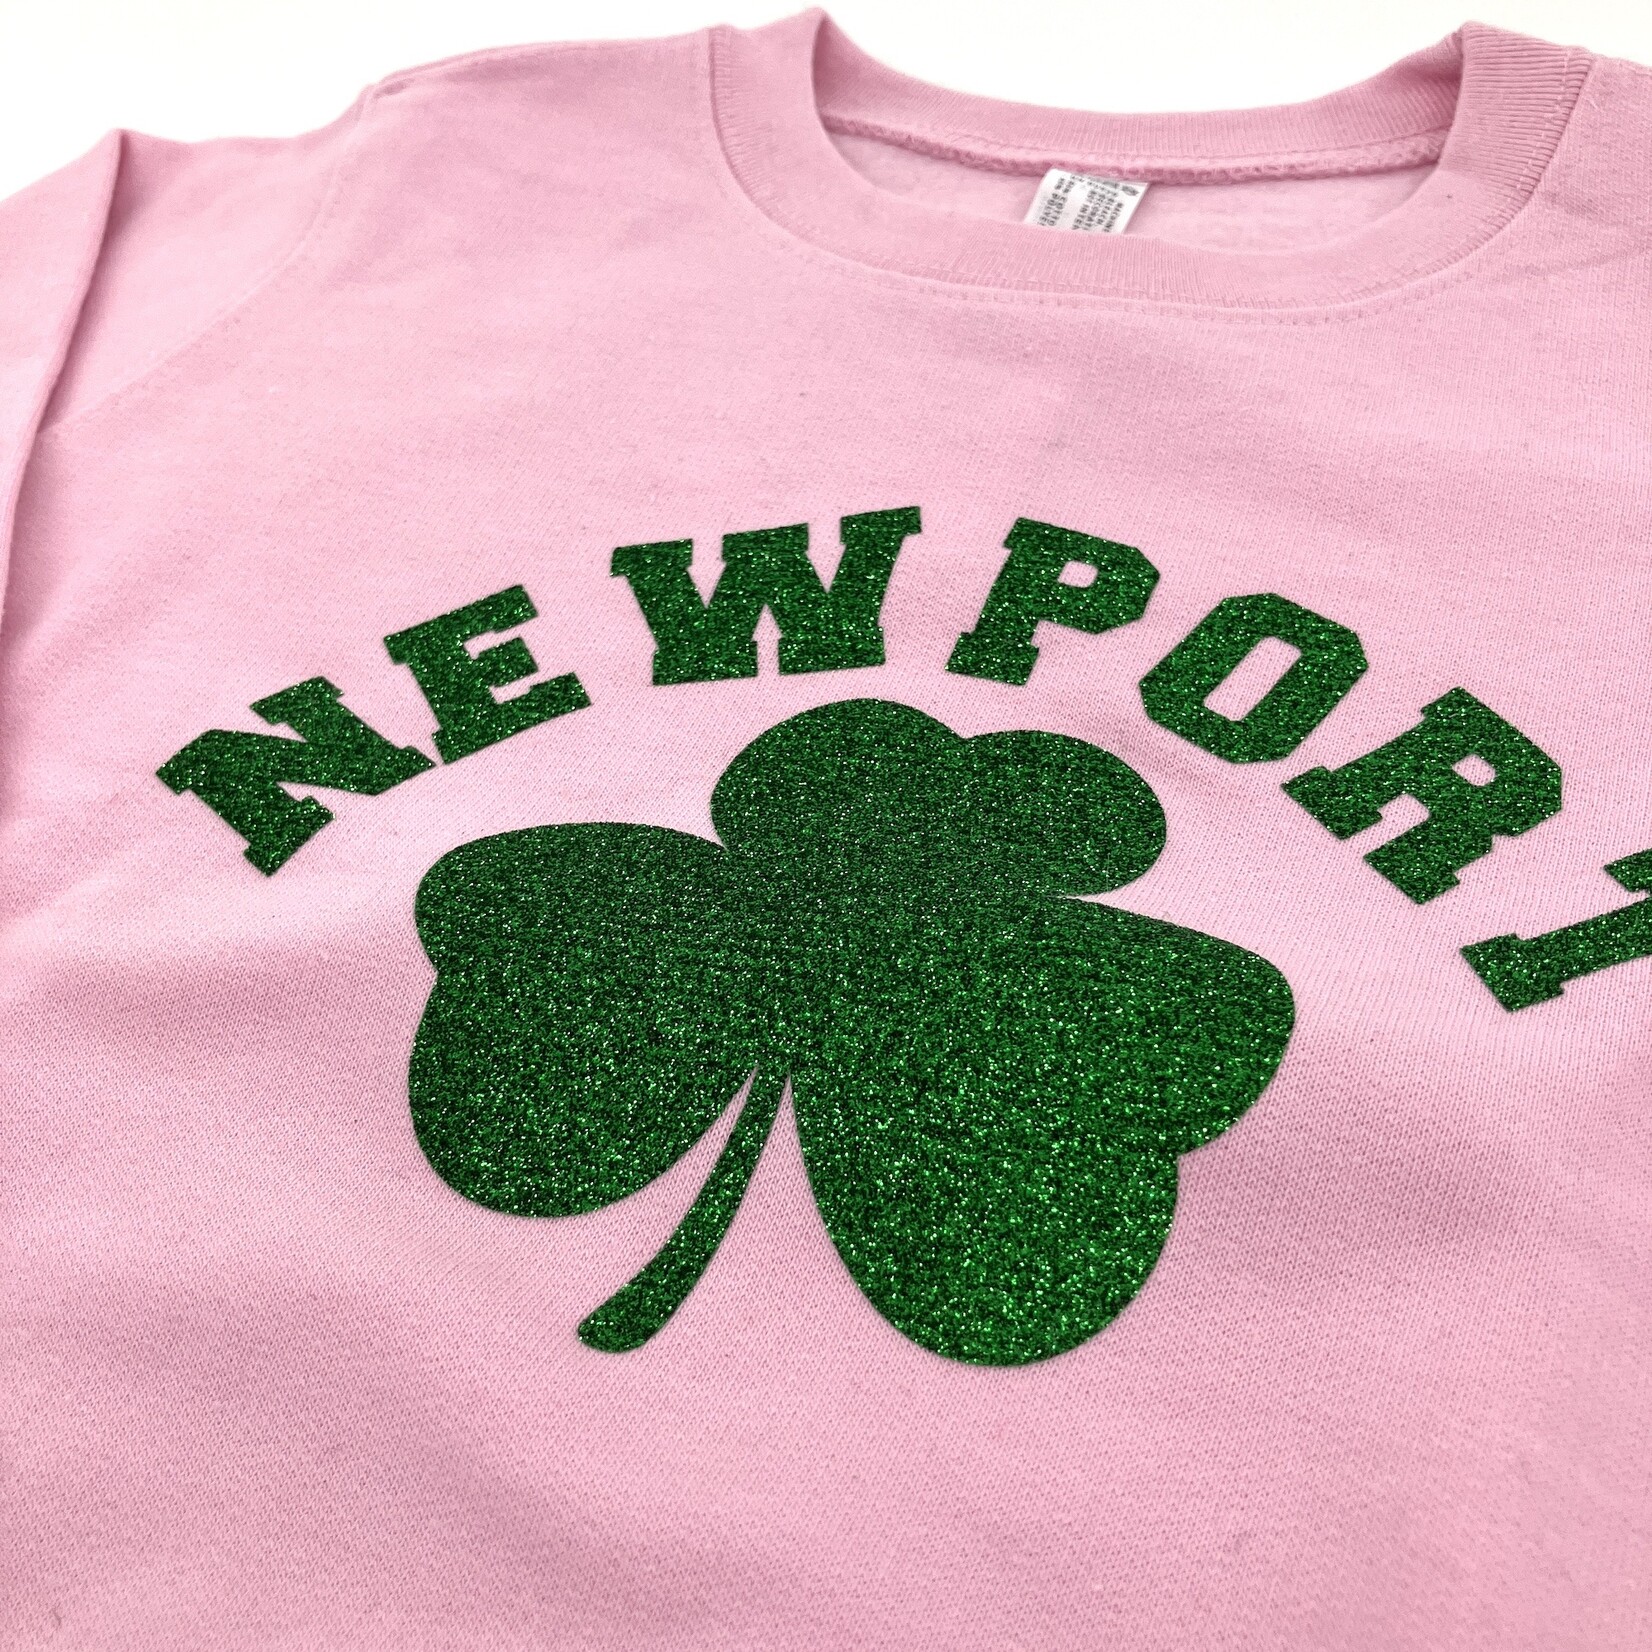 Newport Shamrock Sweatshirt